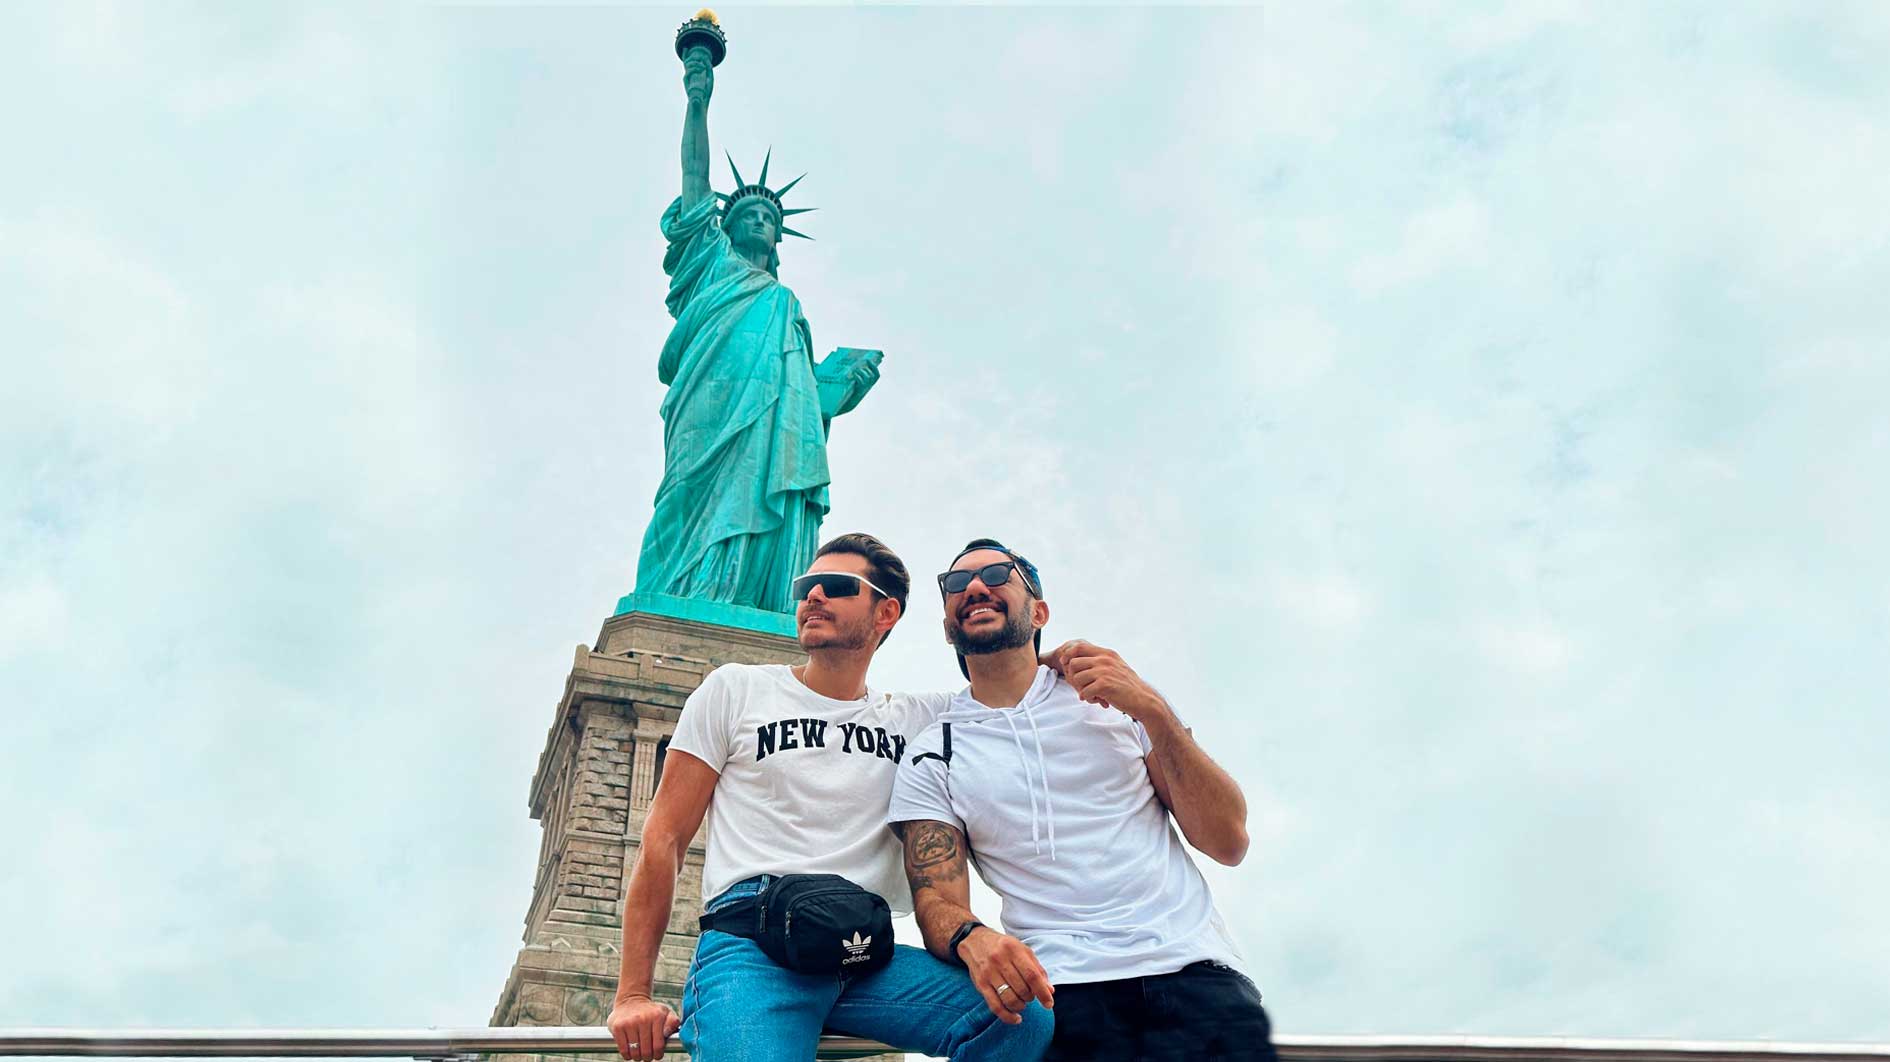 Franklin David e Vitor Vianna se encantam pela Estátua da Liberdade, em Nova York